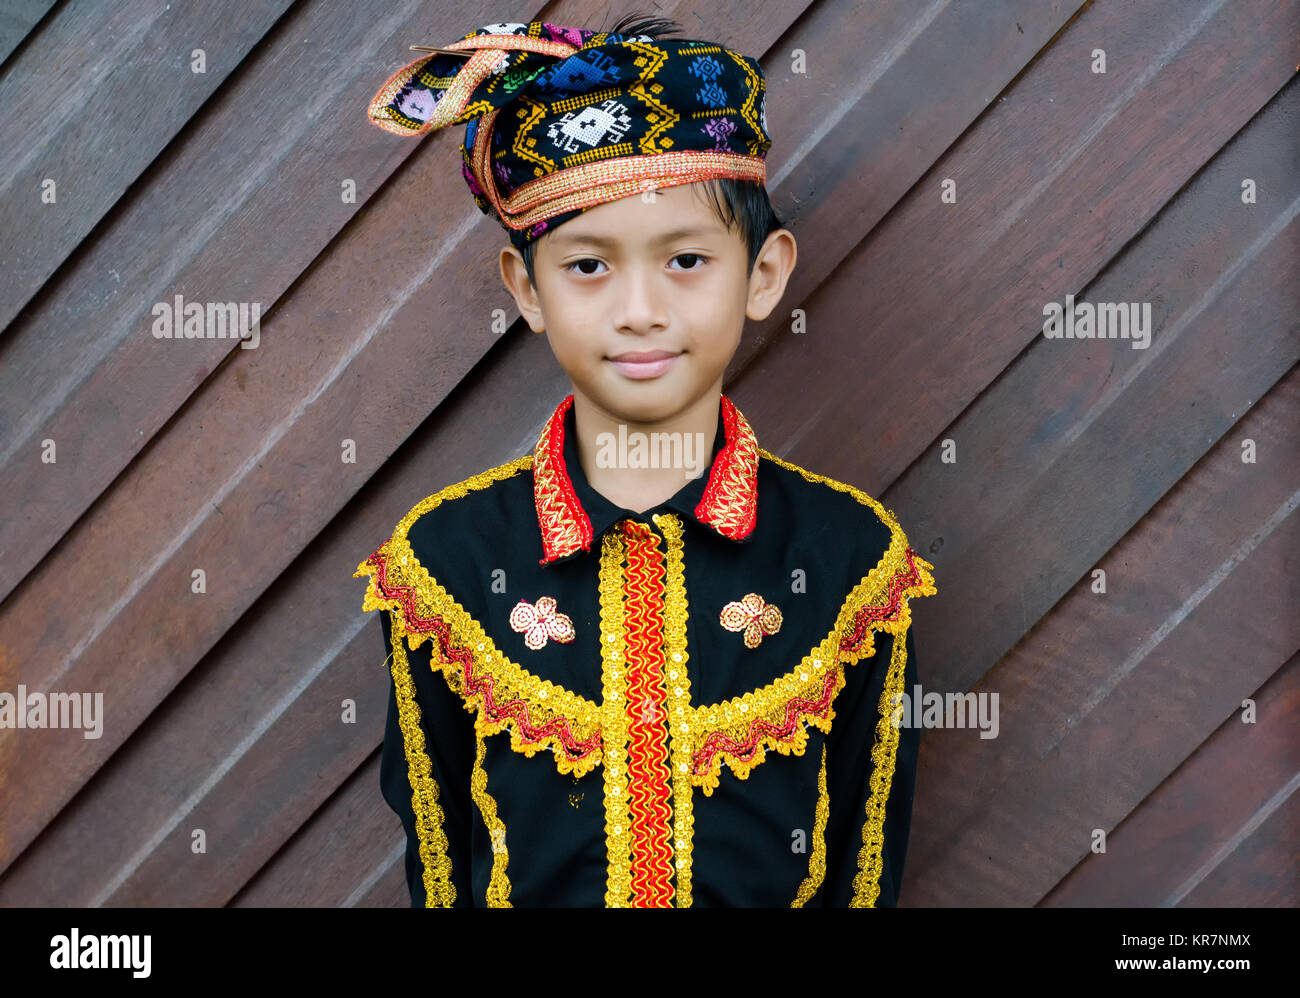 Tuaran Kota Kinabalu, Malaysia - Dezember 02, 2017: Jungen aus indigenen Bevölkerung von Sabah Borneo in Malaysia in traditioneller Kleidung während der Mus Stockfoto